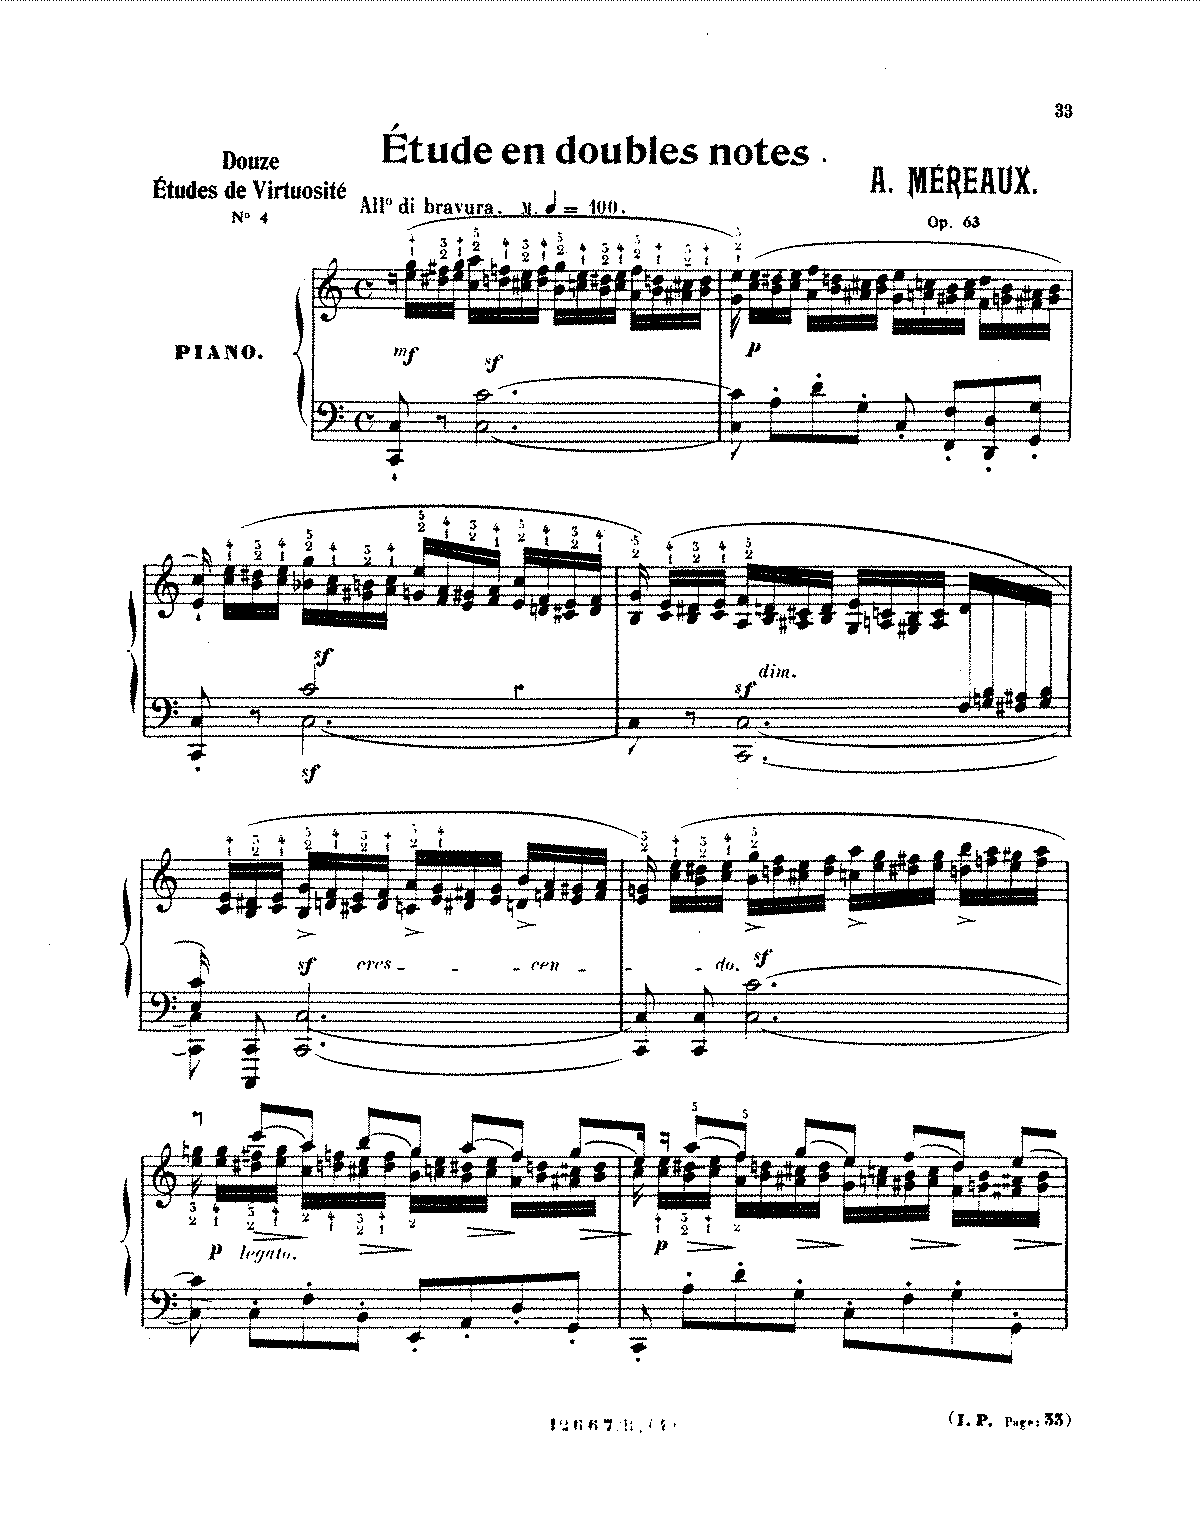 Études, Op.63 (Méreaux, Jean-Amédée Lefroid de) - IMSLP: Free Sheet ...